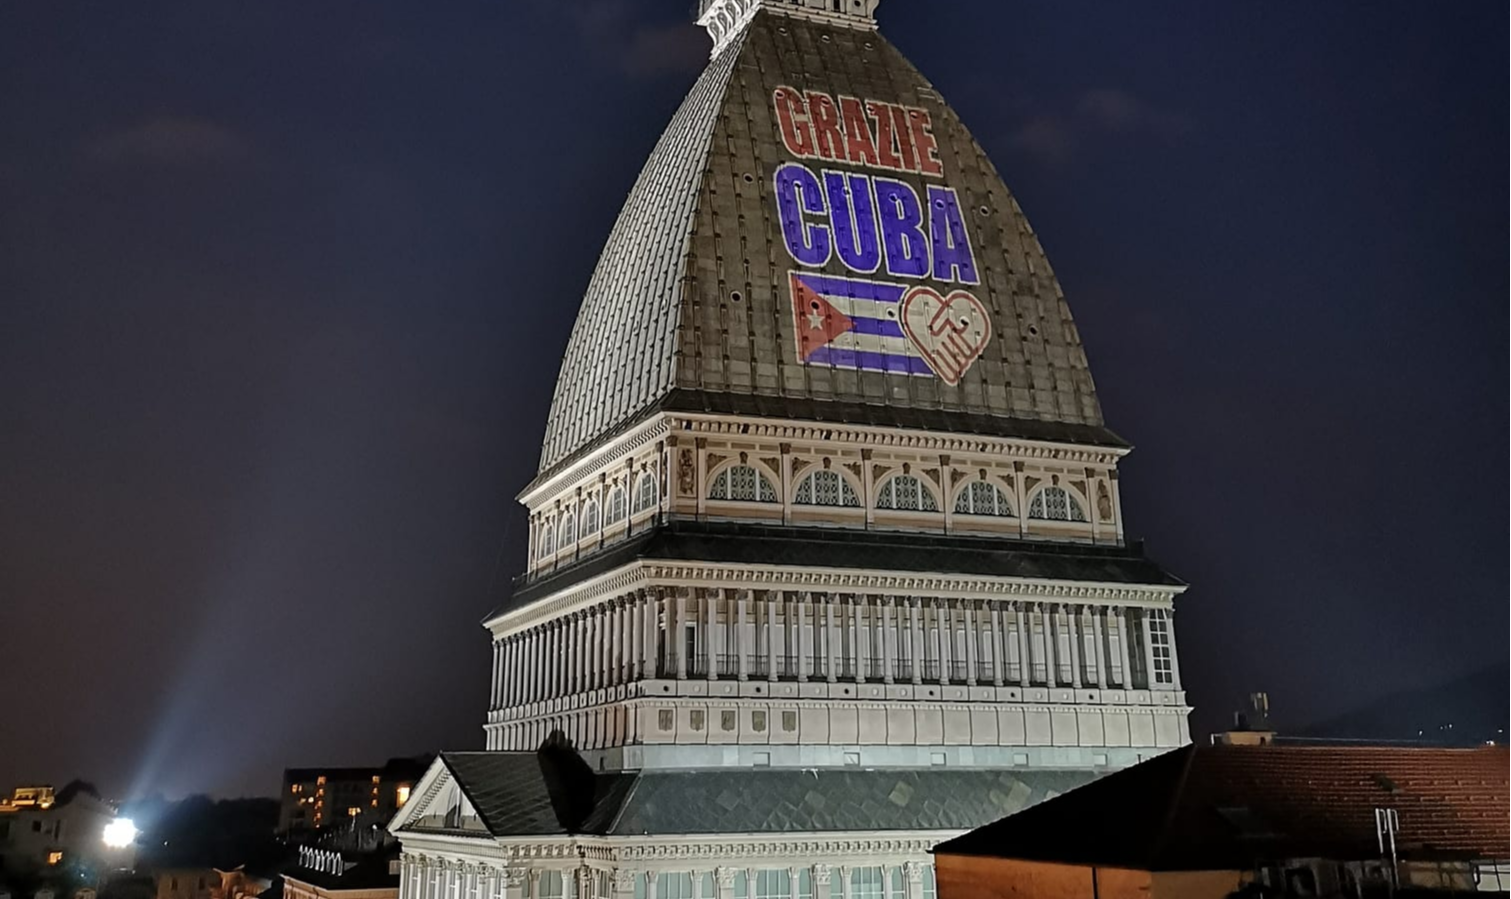 Frase 'Grazie Cuba' foi projetada na Mole Antonelliana, edifício mais emblemático de Turim